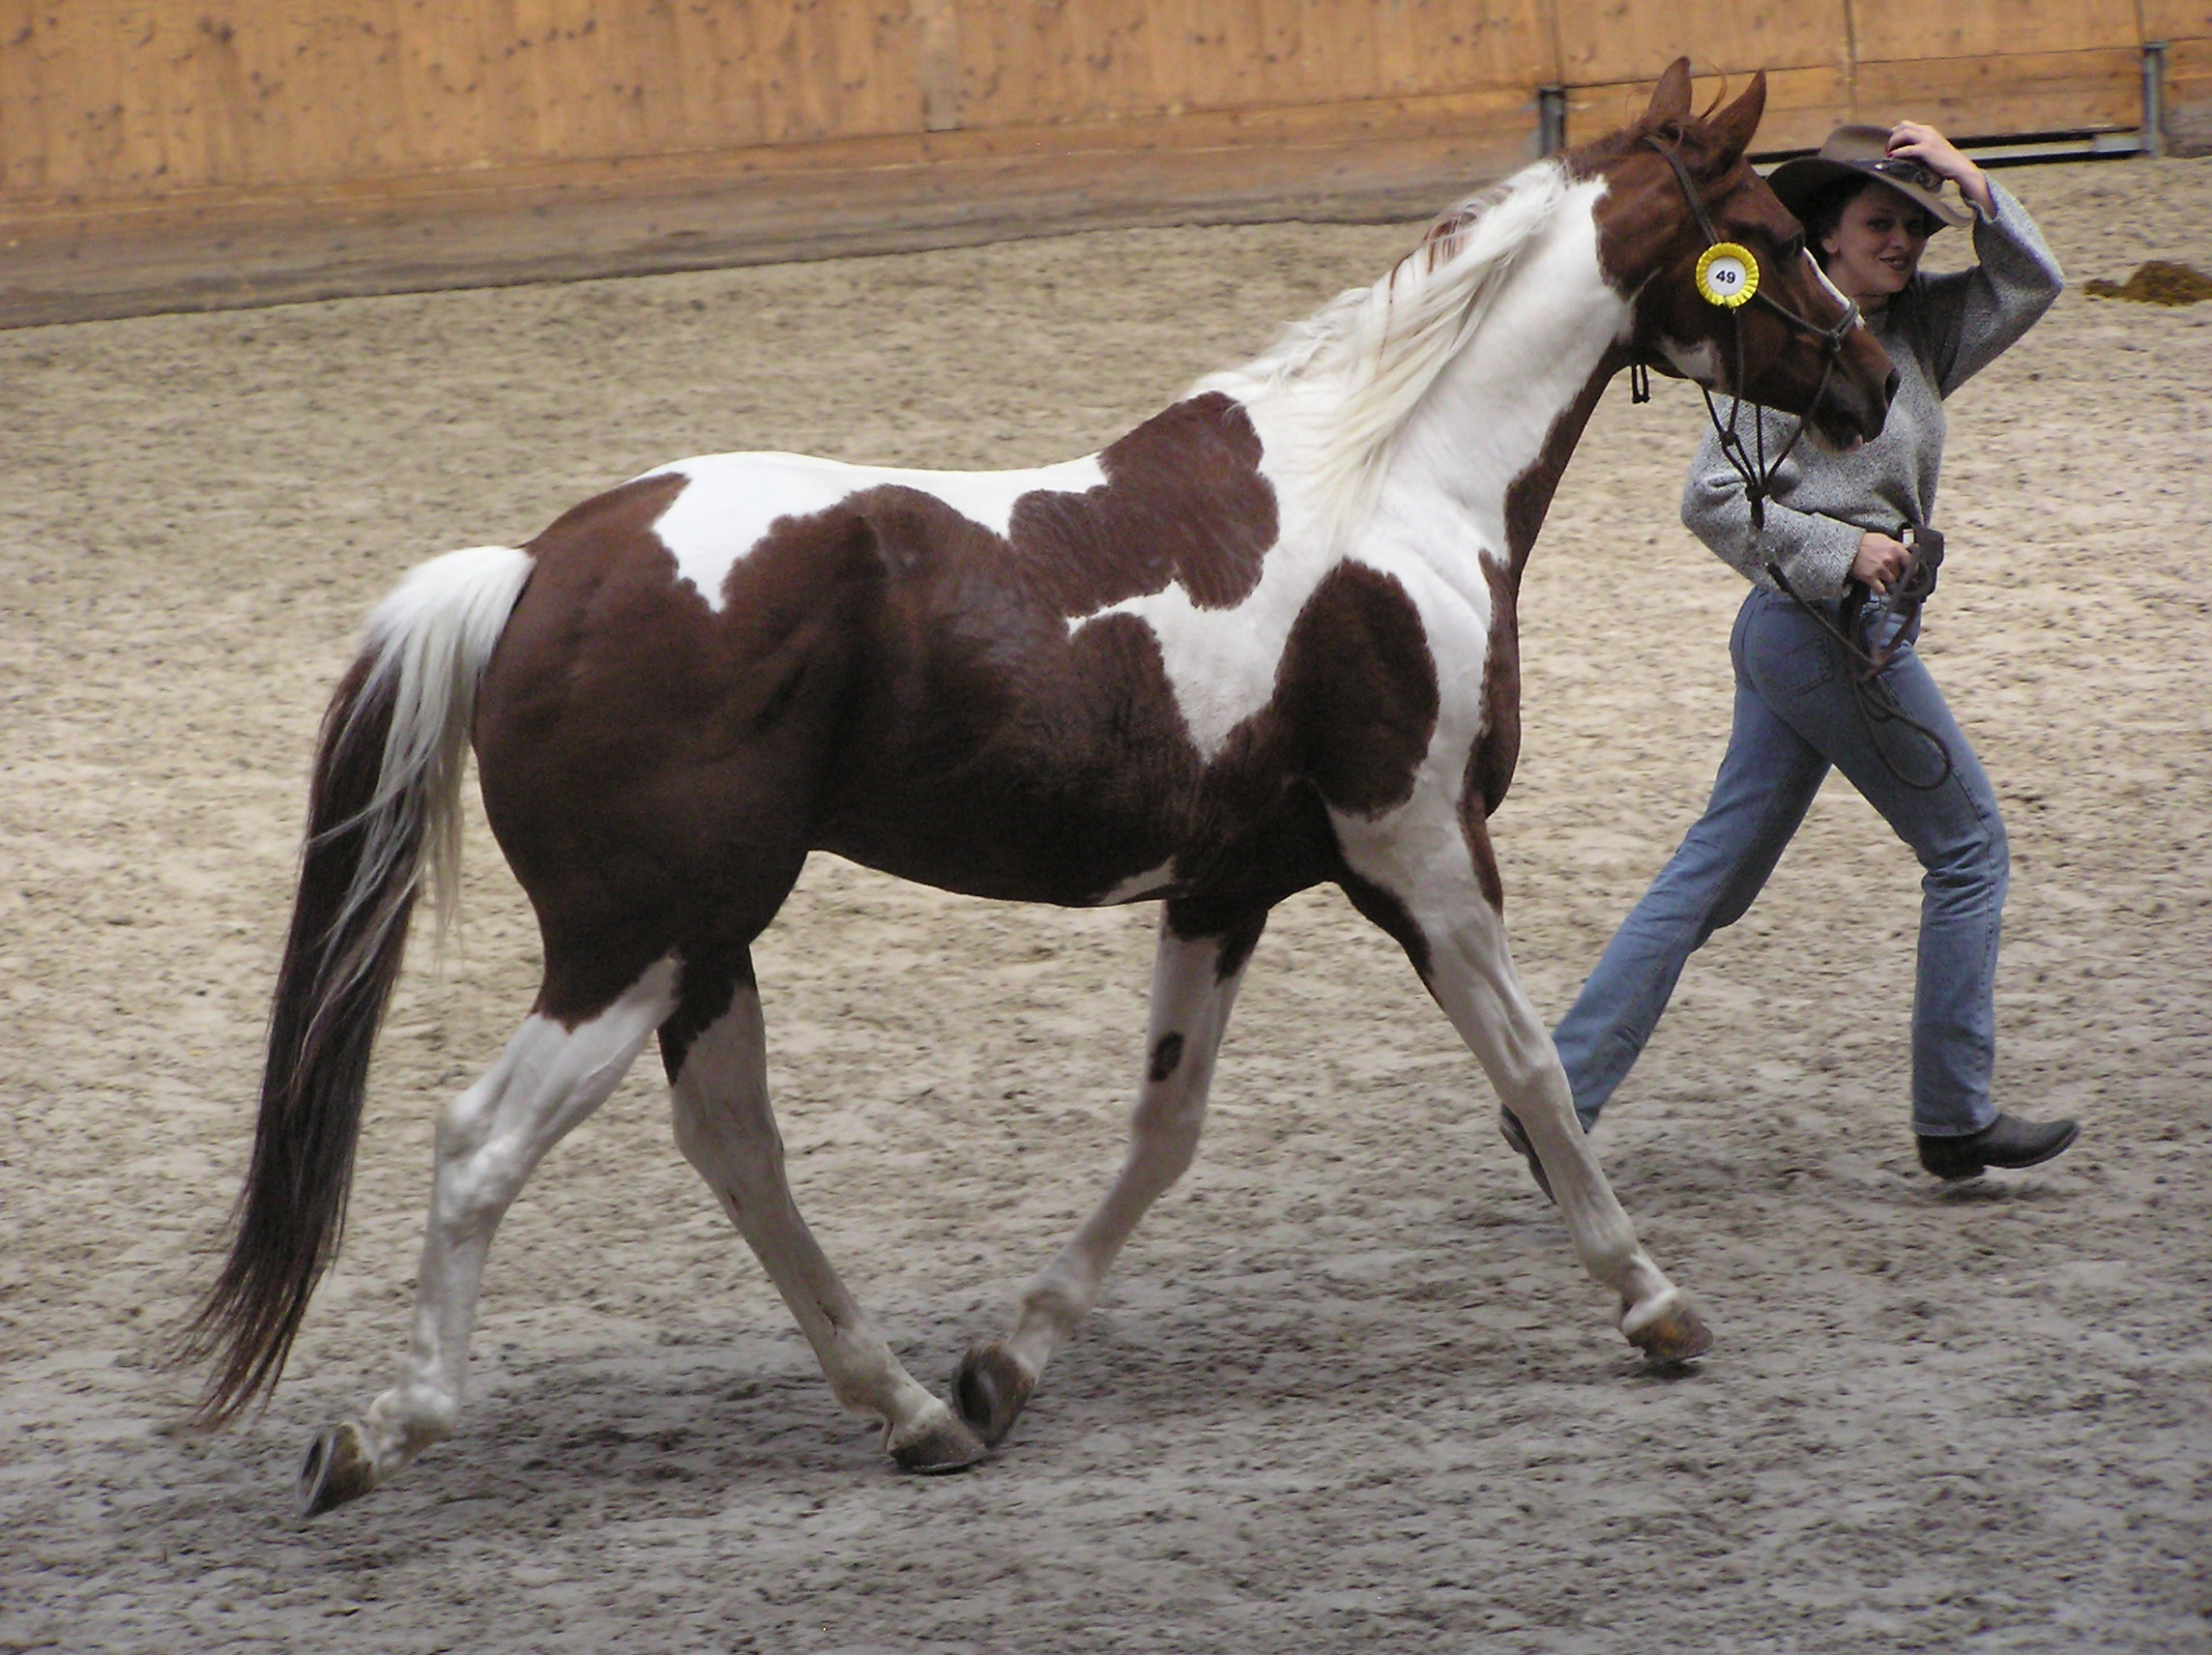 What do cowboys call a piebald horse?